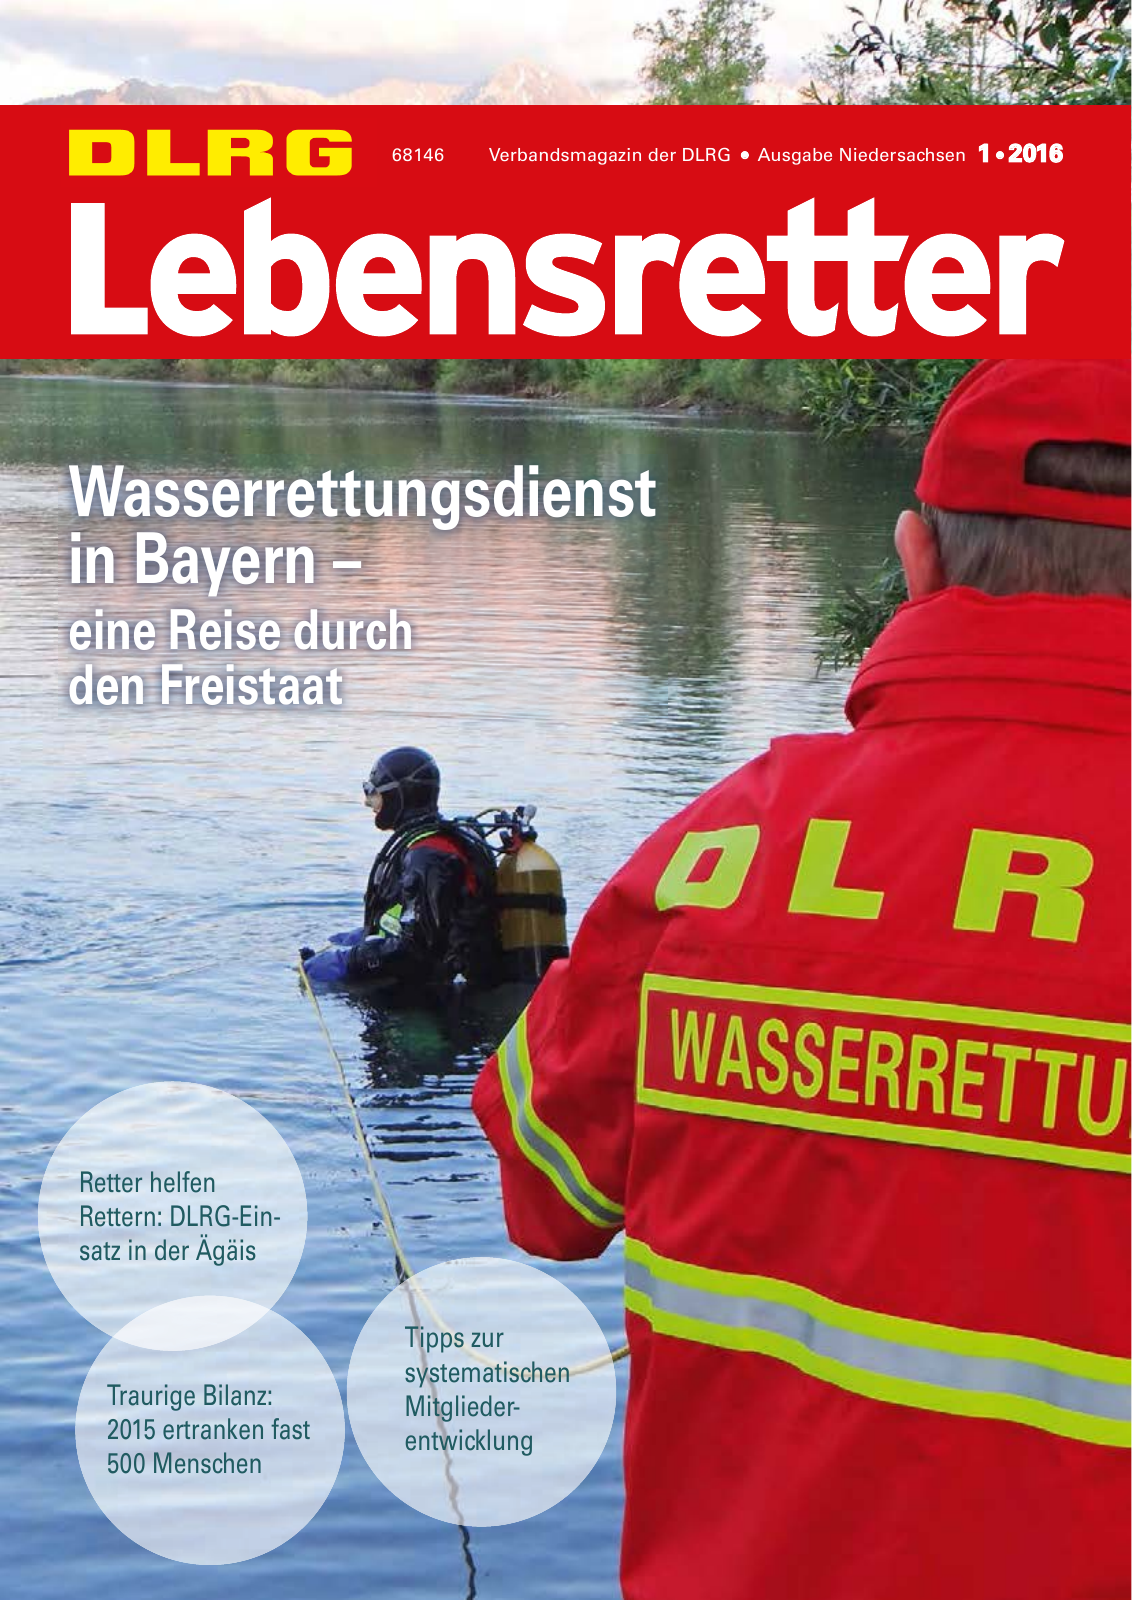 Vorschau Lebensretter 1/2016 - Regionalausgabe Niedersachsen Seite 1